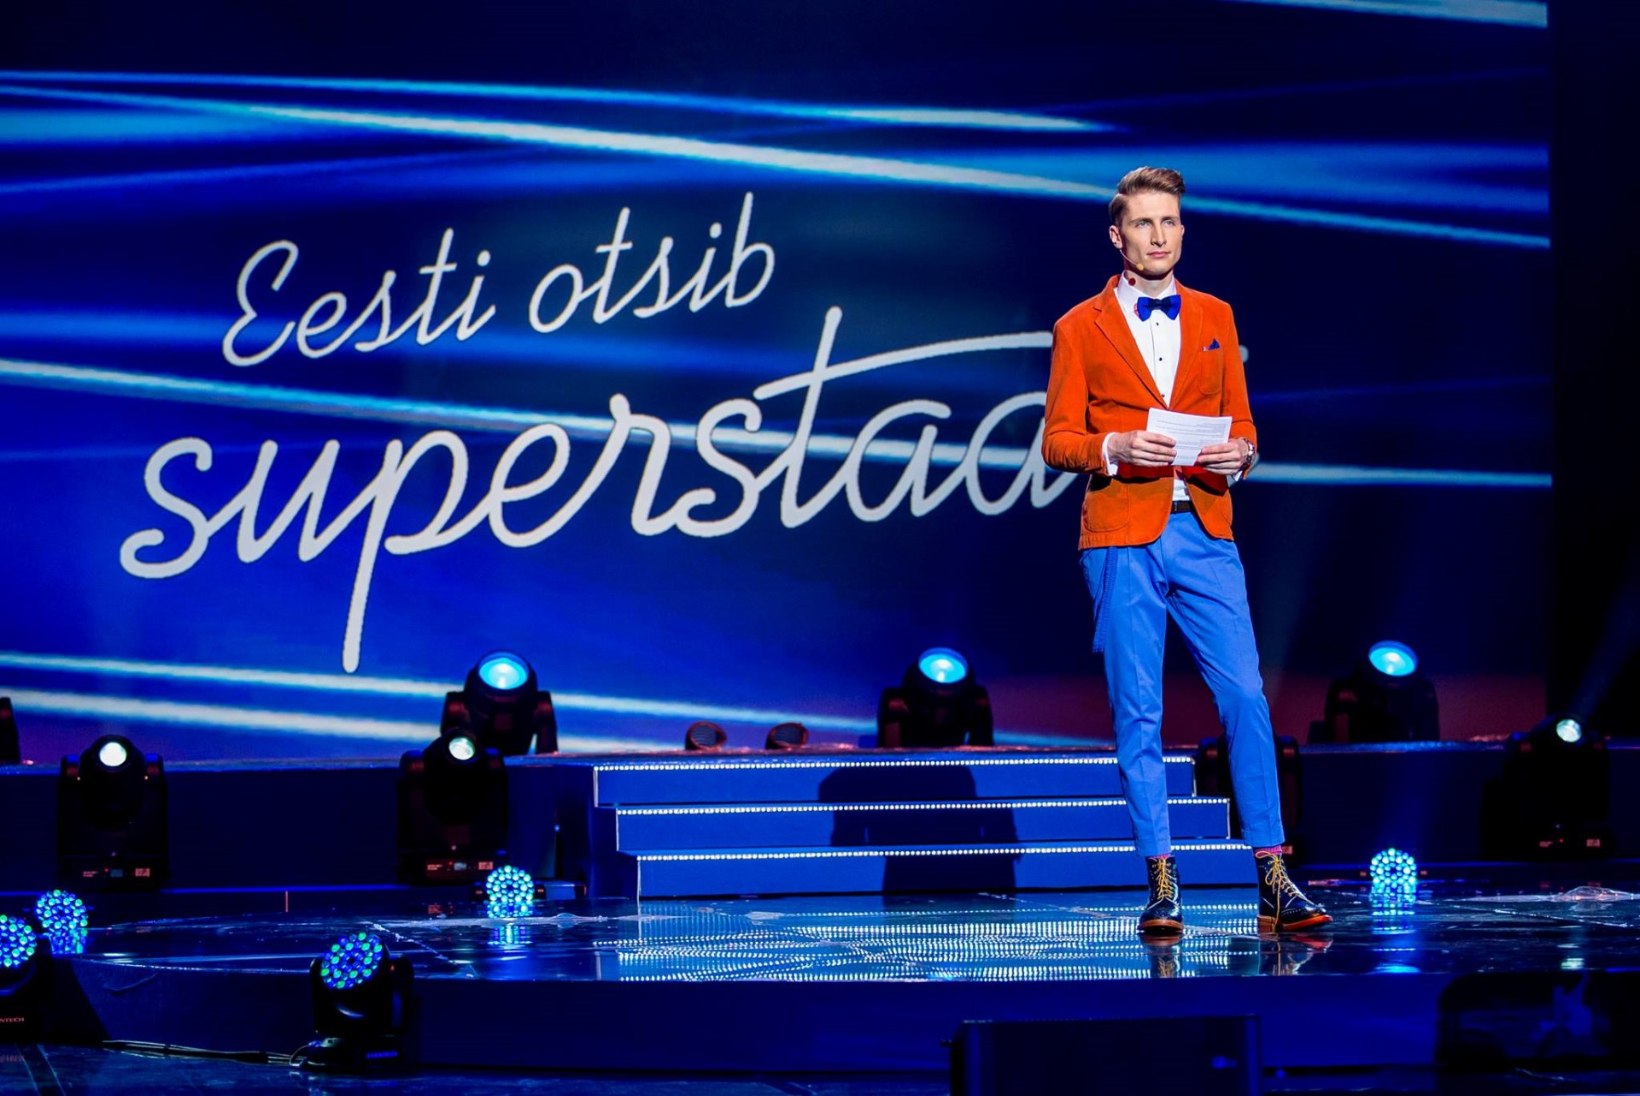 VAATA VAID JA KOMMENTEERI KA: superstaarsaatejuht Karl-Erik Taukar siin ja seal! Kuidas hindate teda laval ja teles?